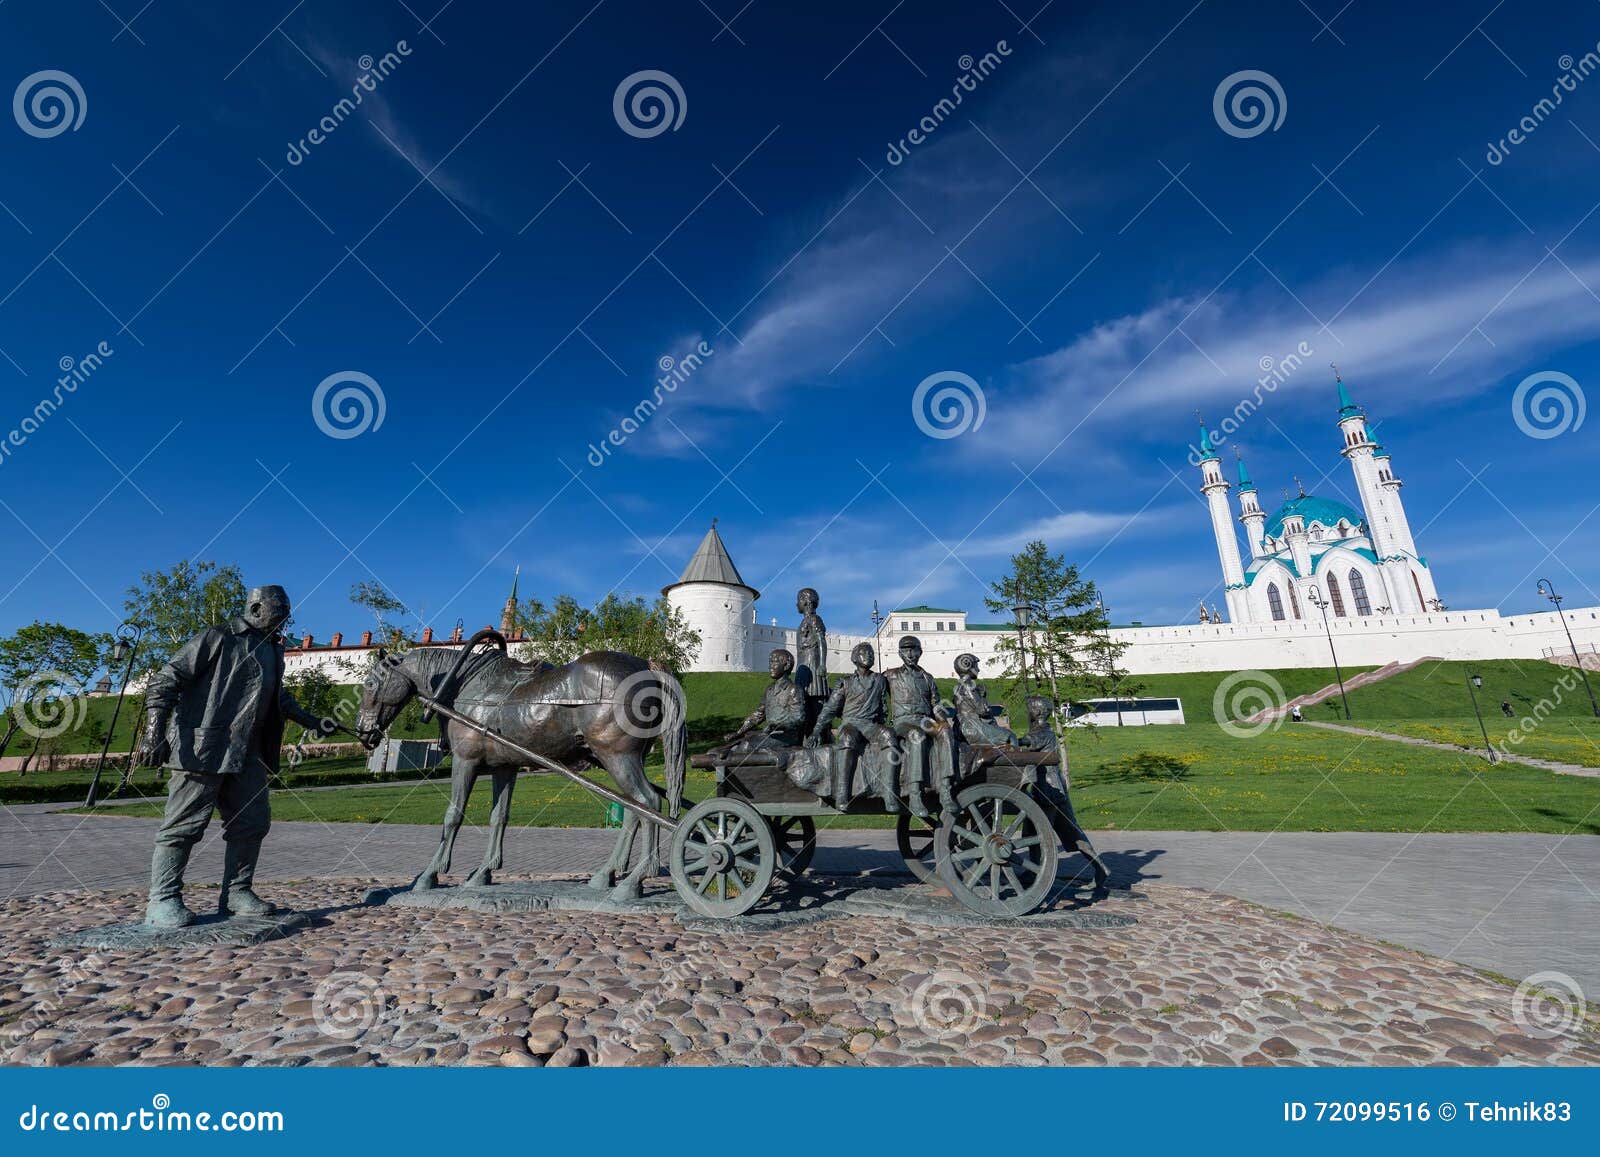 kazan, russia - 2016 may 13: the monument to kazan benefactor de